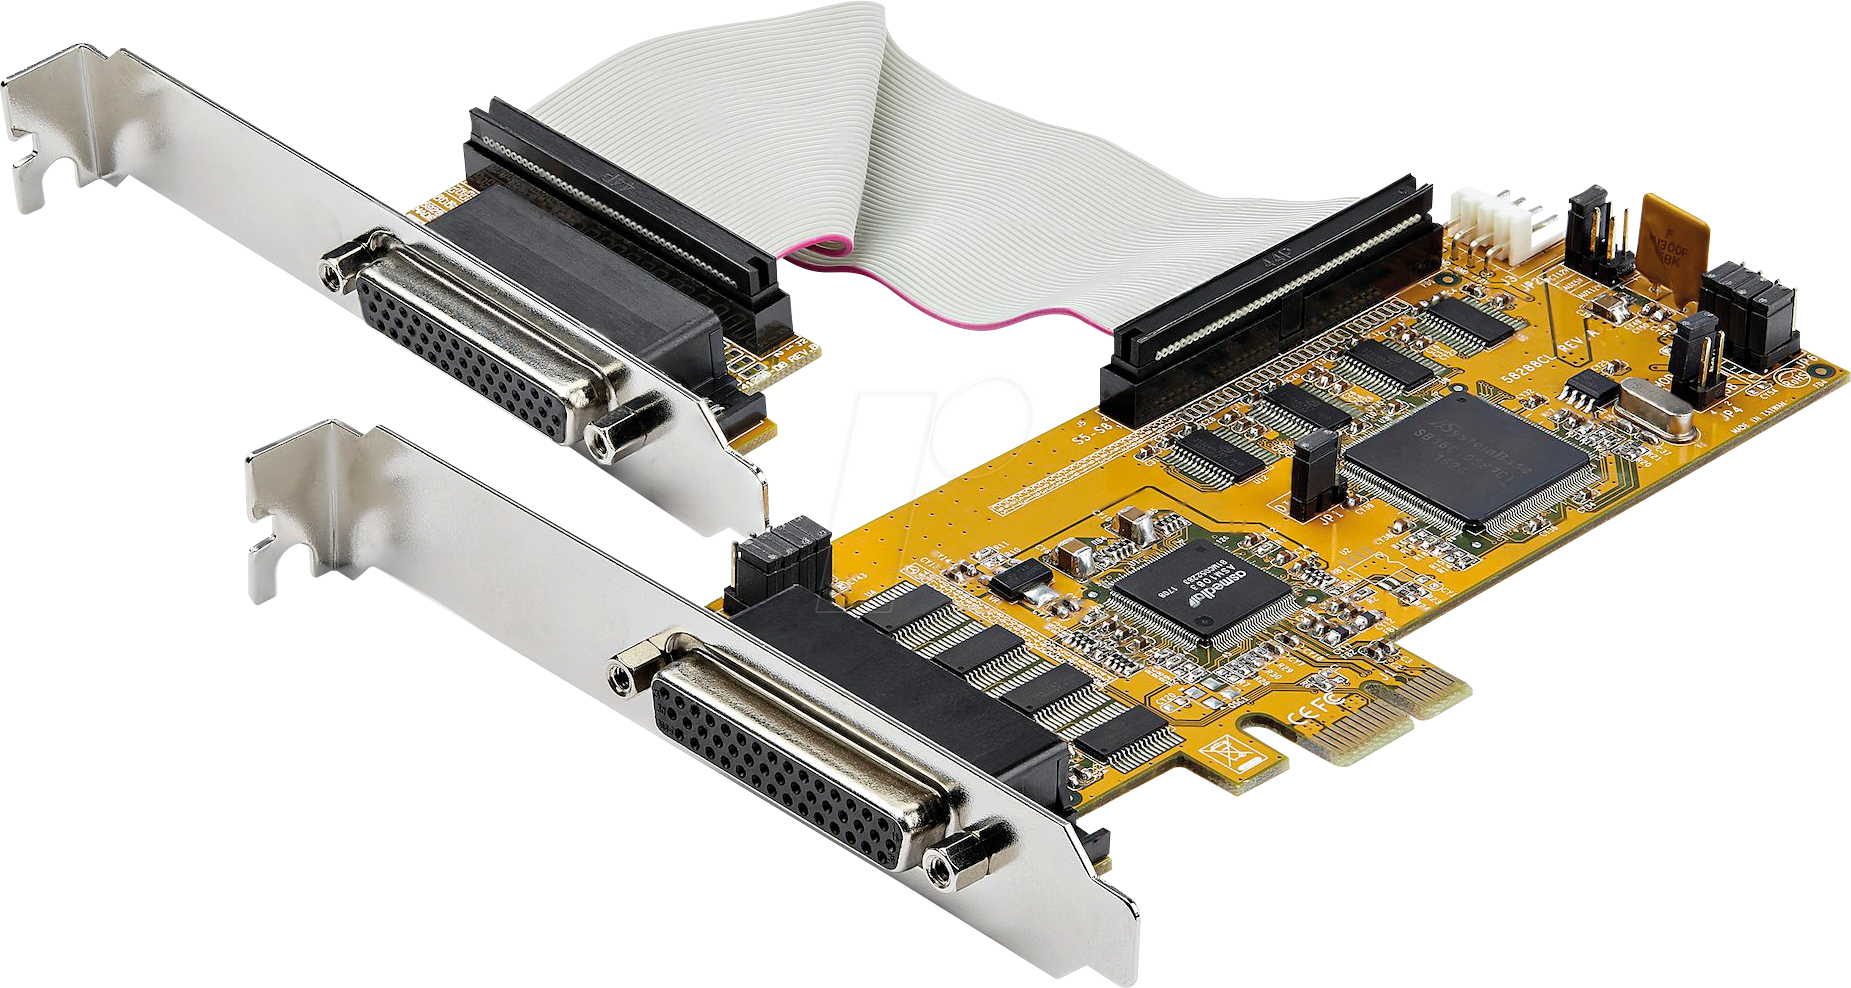 ST PEX8S1050LP - 8 Port RS 232, seriell, PCIe Karte, low profile von StarTech.com